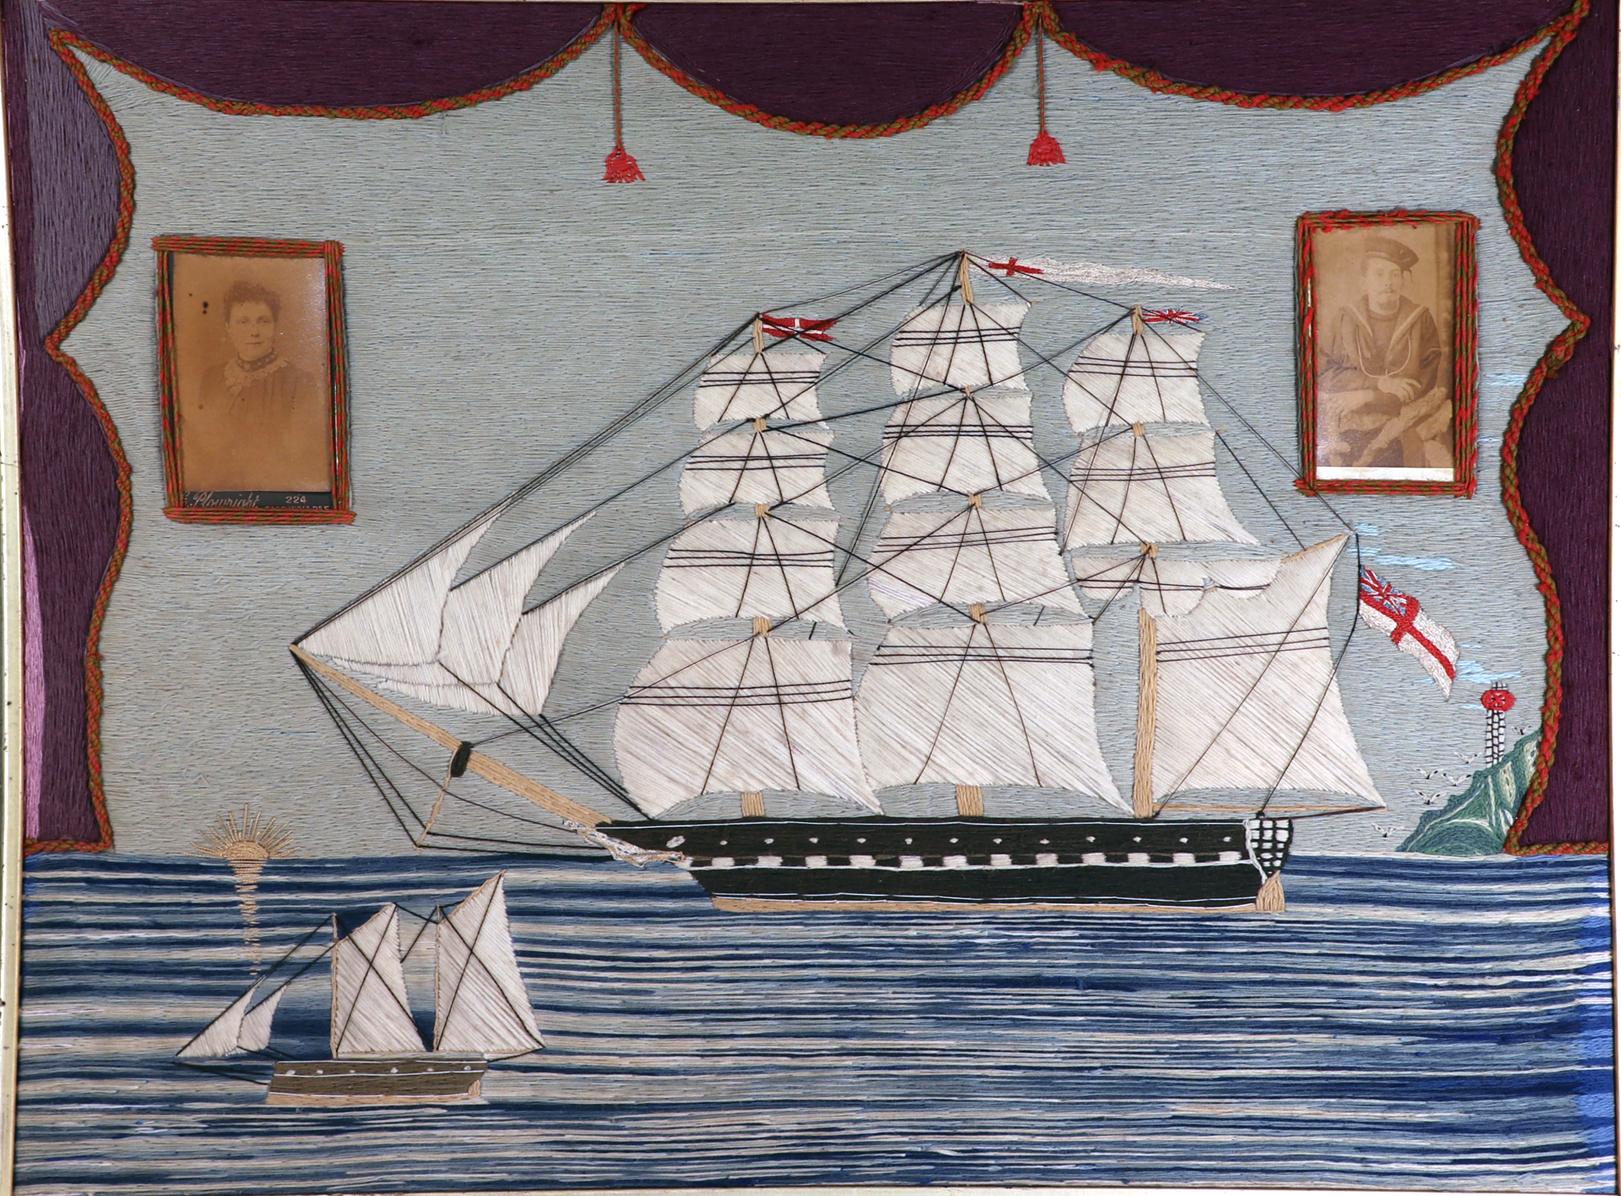 Laine de matelot britannique représentant un navire de la Royal Navy en mer,
Circa 1870

Le lainage de marin ou woolie représente une vue bâbord de la frégate de la Royal Navy sous toutes ses voiles et arborant le White Ensign.  Le navire navigue